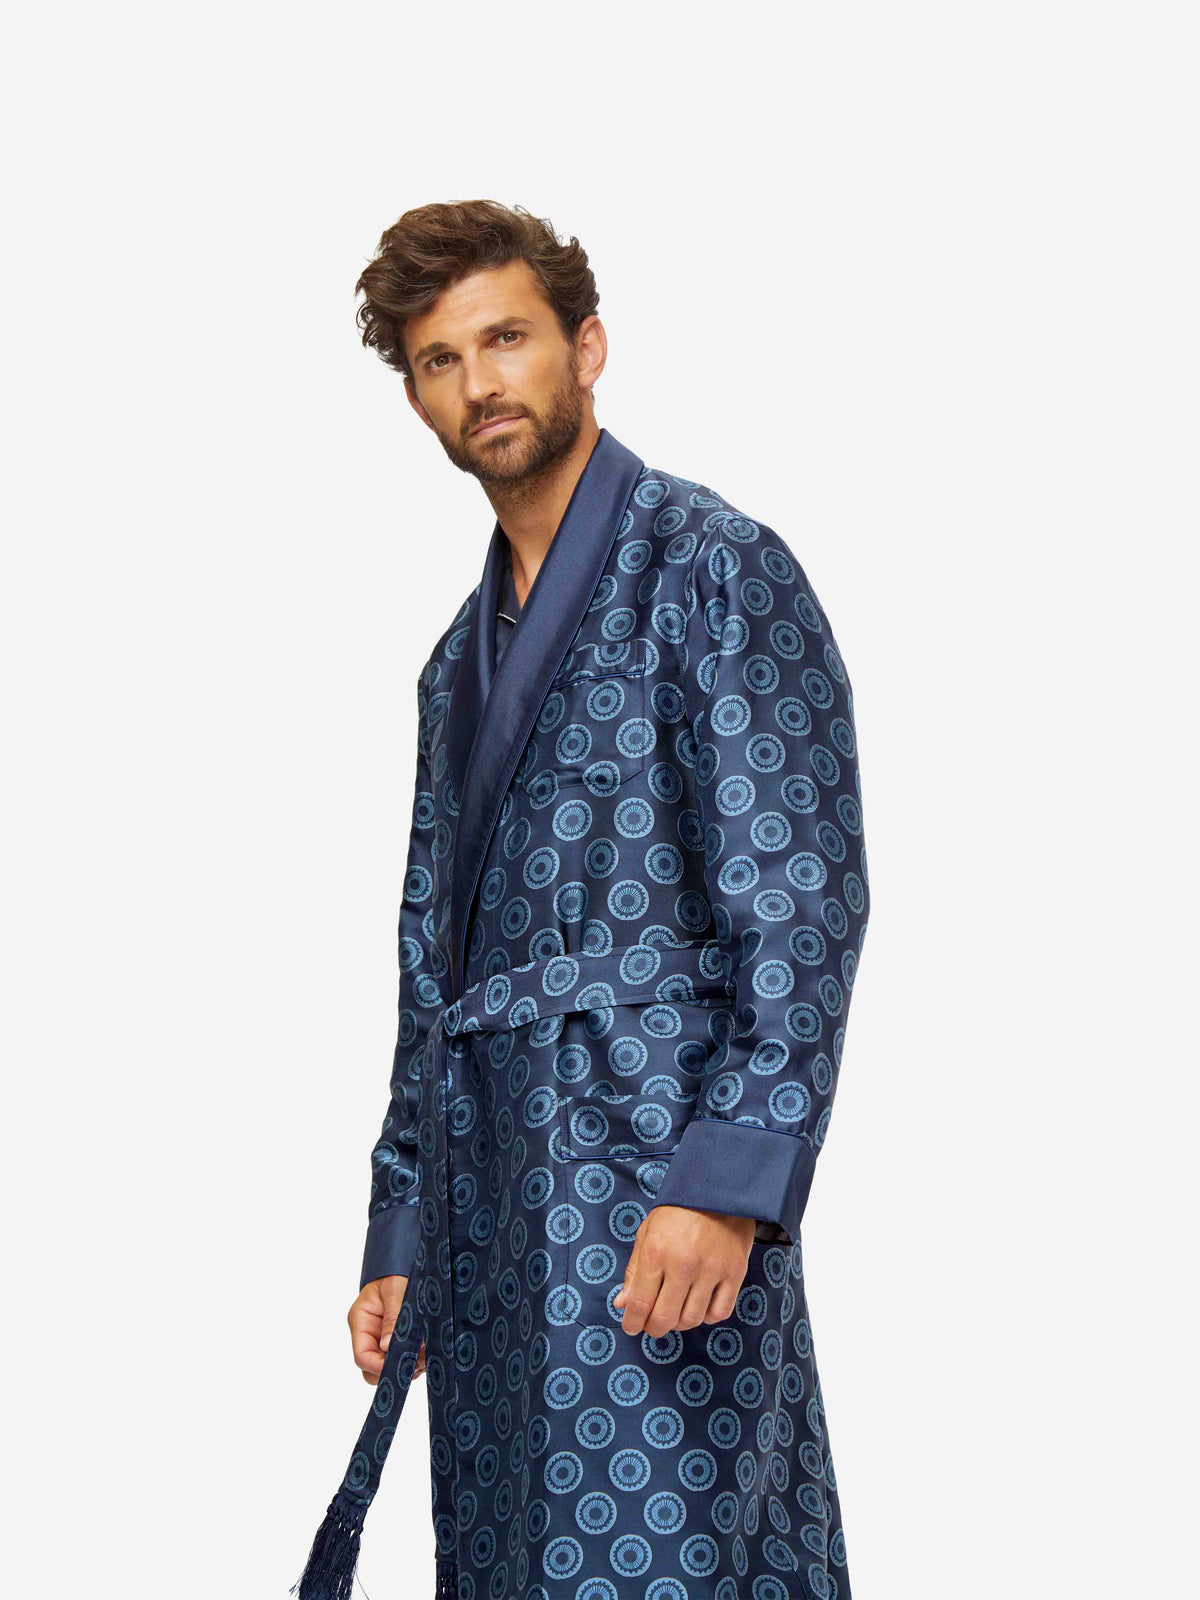 Derek Rose Men's Pajamas Brindisi 93 Silk Satin - Blue